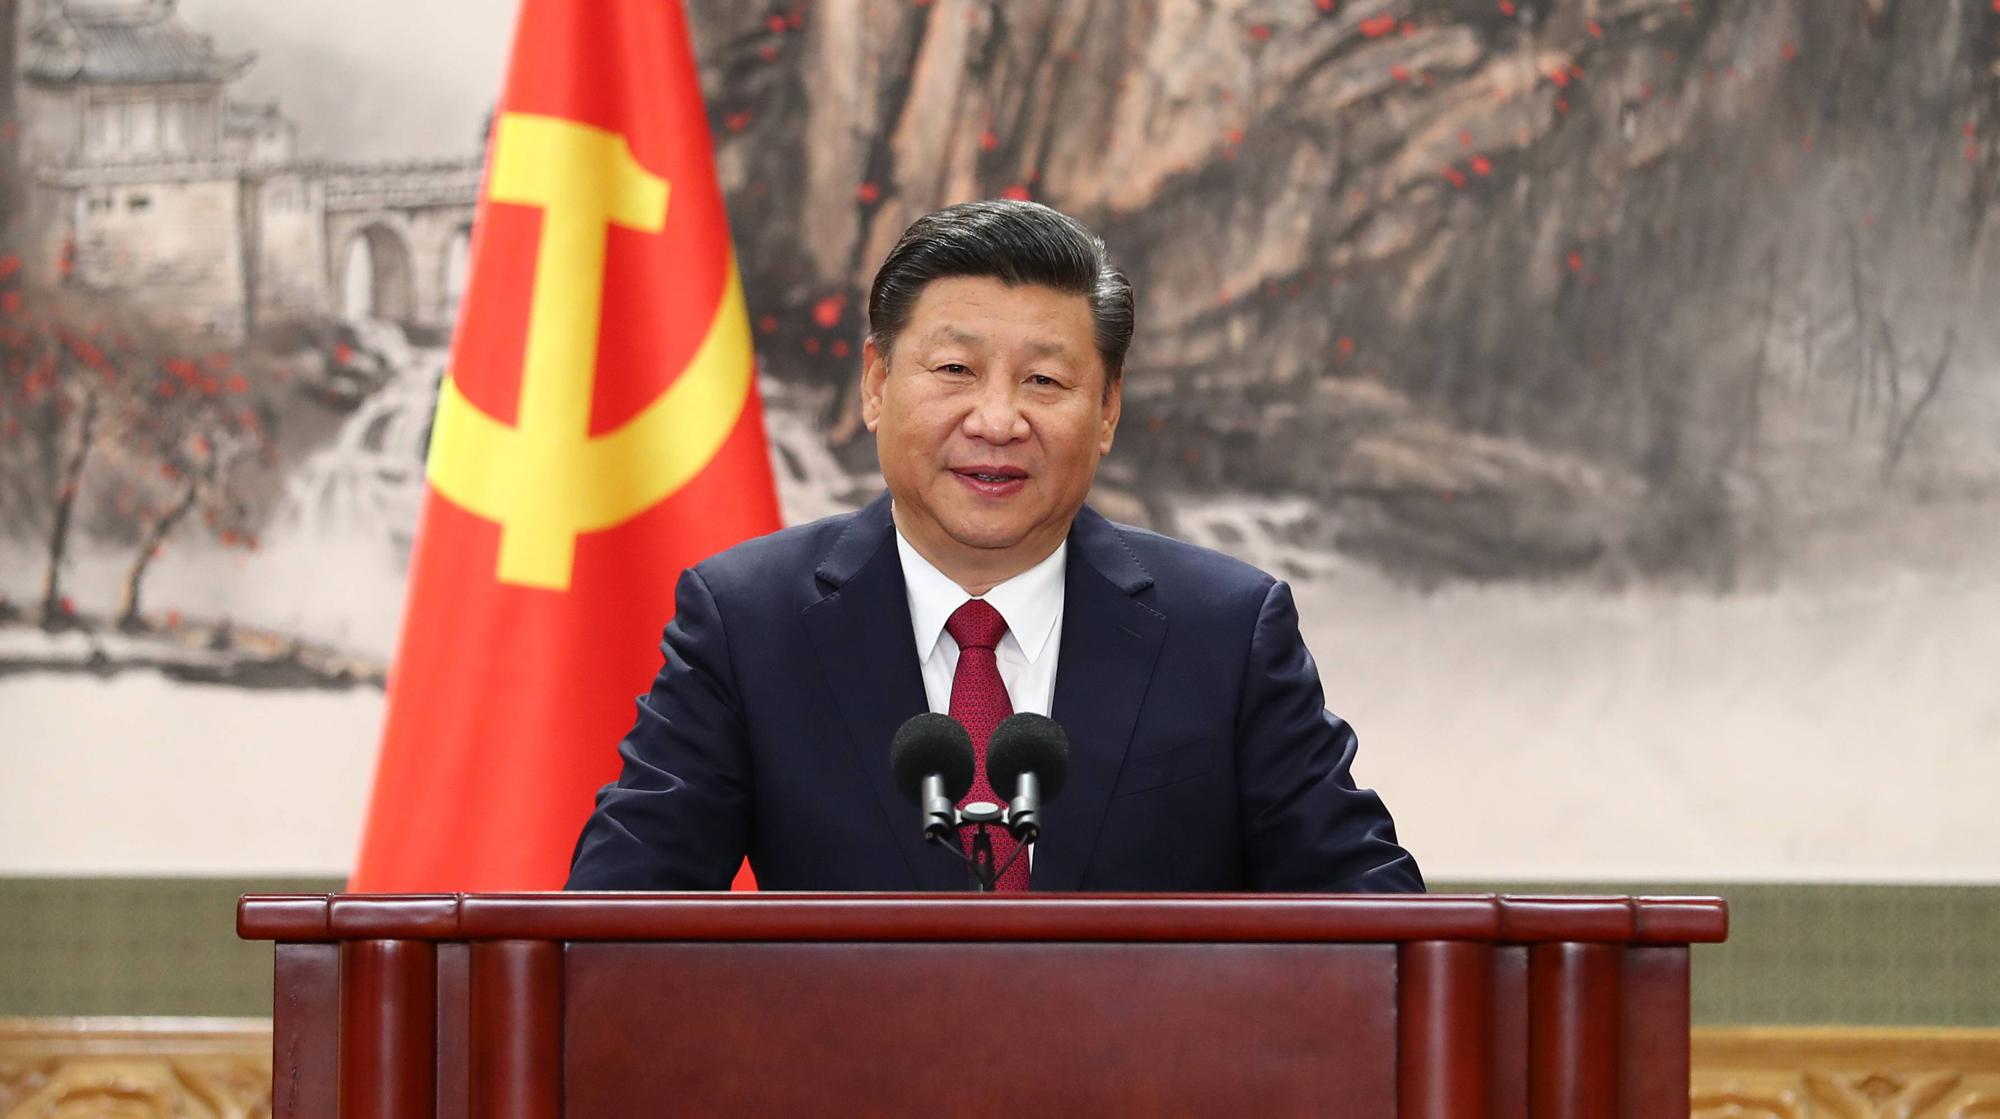 Продлевать полномочия на должности главы КНР ему предстоит в марте 2018 года Фото: © GLOBAL LOOK press/Xie Huanchi